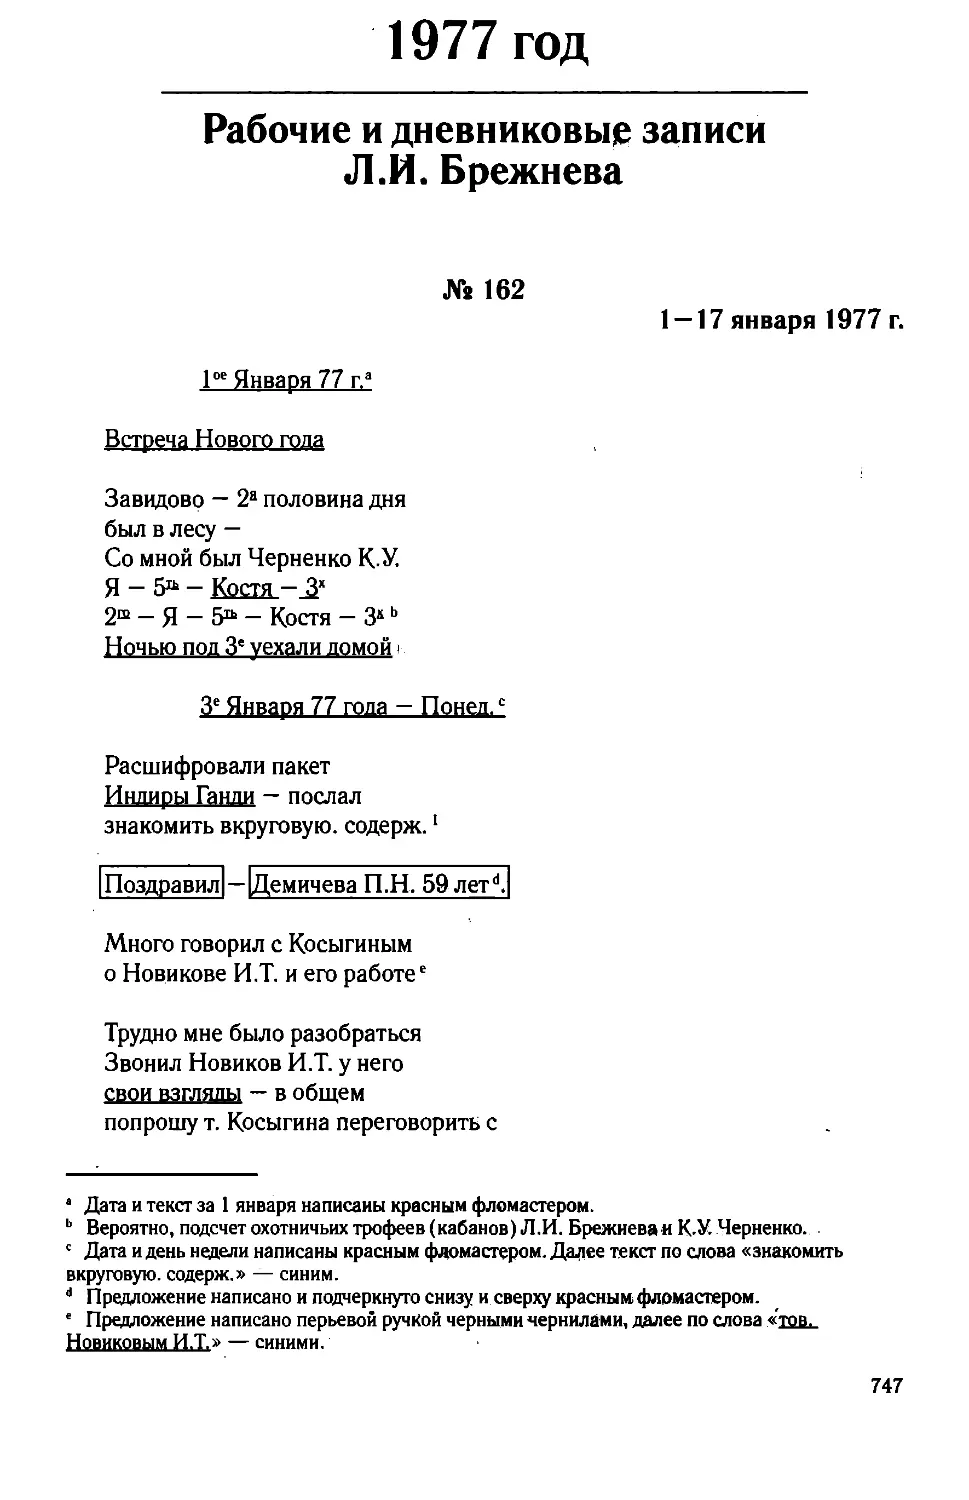 Рабочие и дневниковые записи Л.И. Брежнева. 1977 год